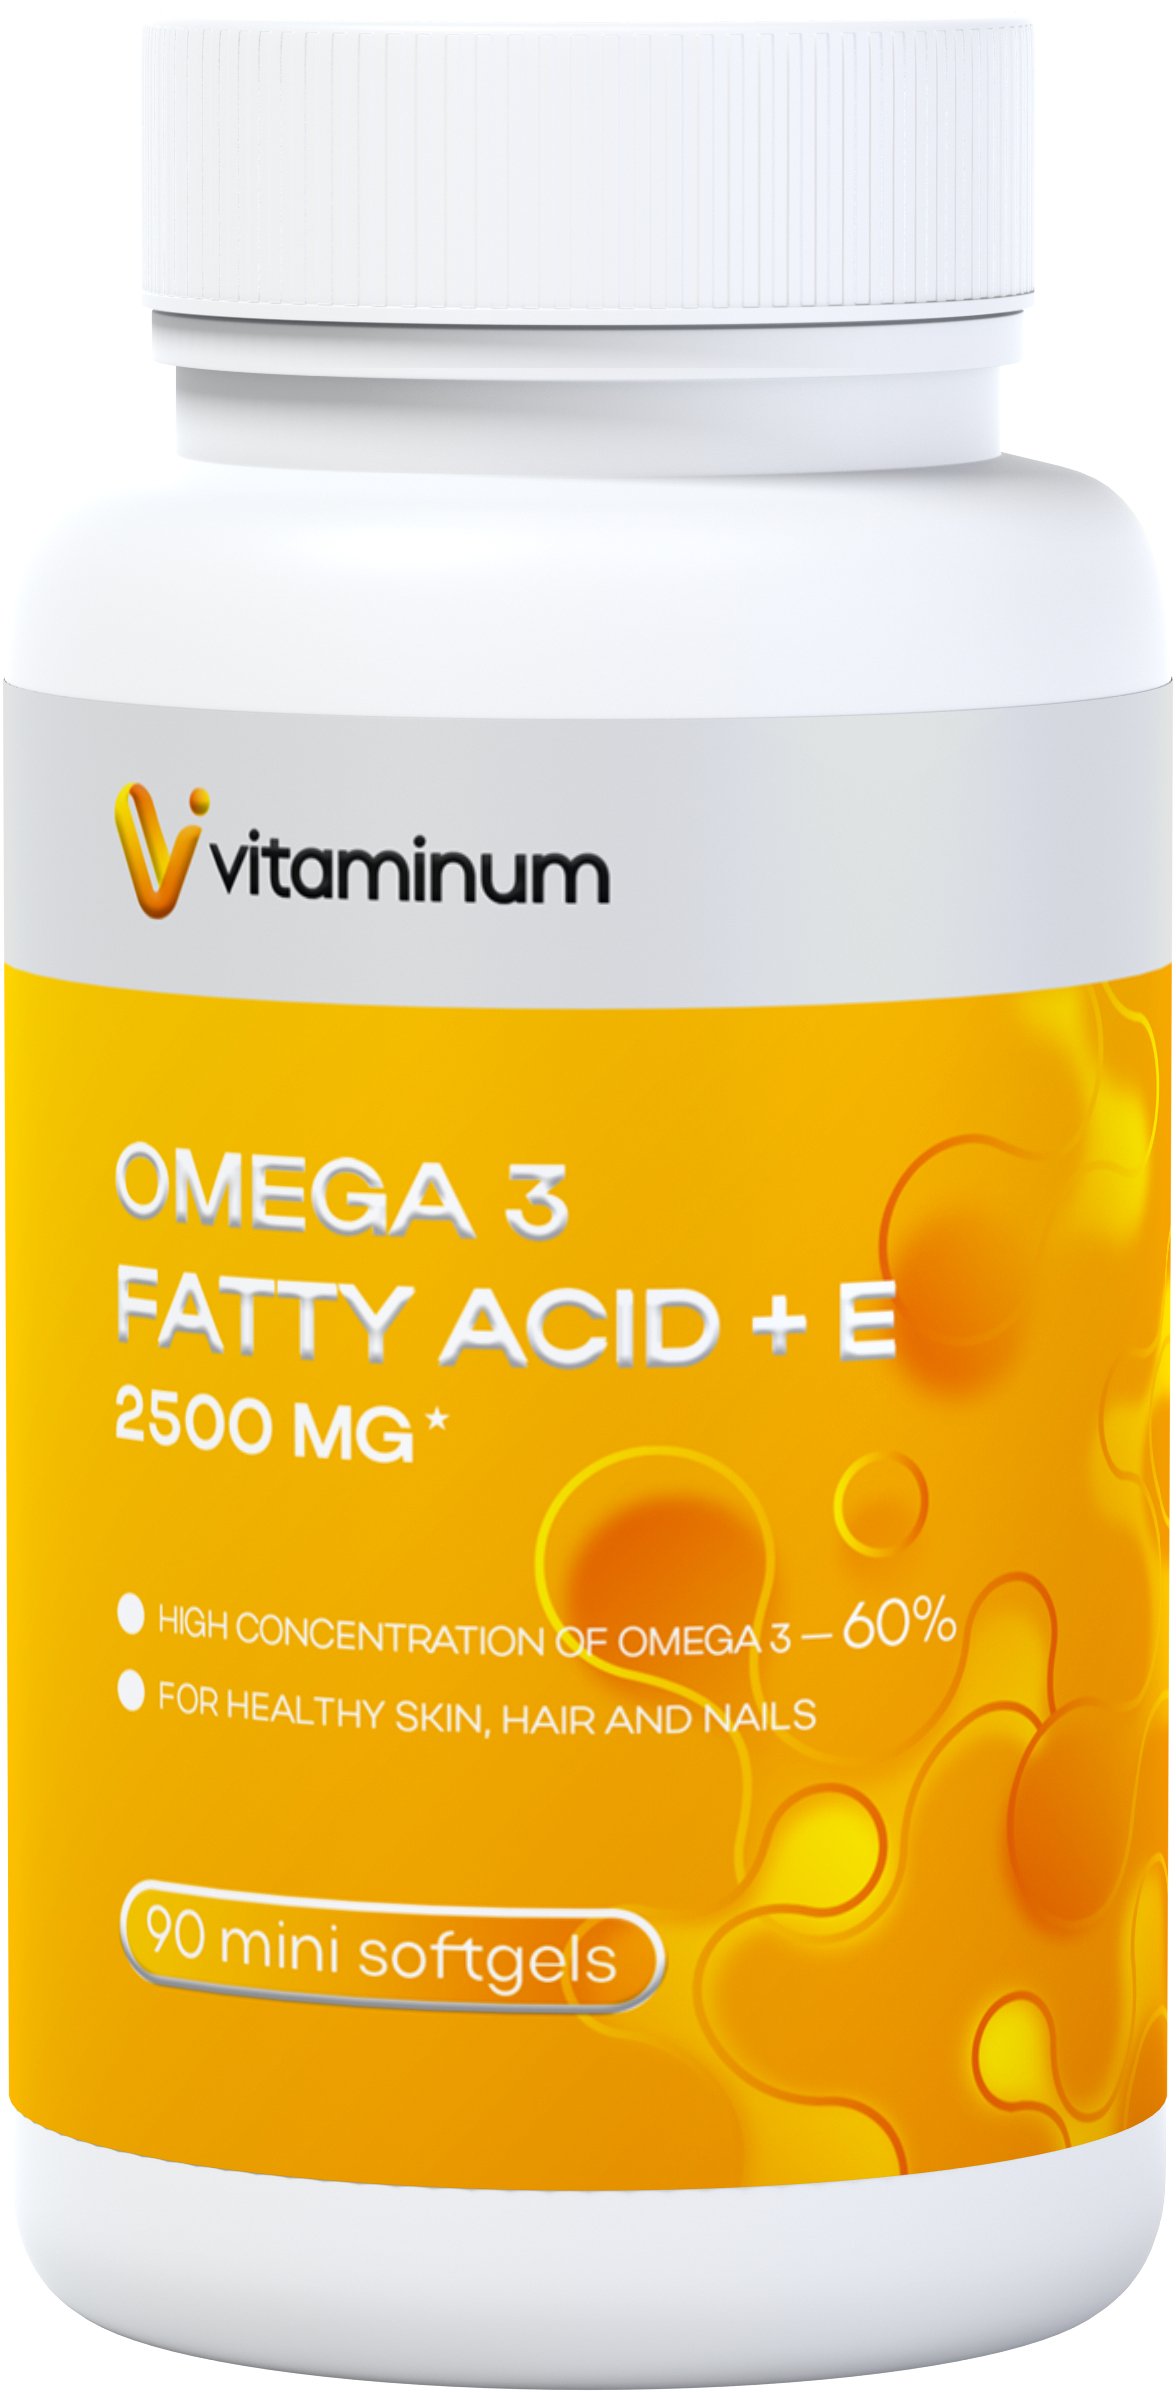  Vitaminum ОМЕГА 3 60% + витамин Е (2500 MG*) 90 капсул 700 мг   в Усолье-Сибирское